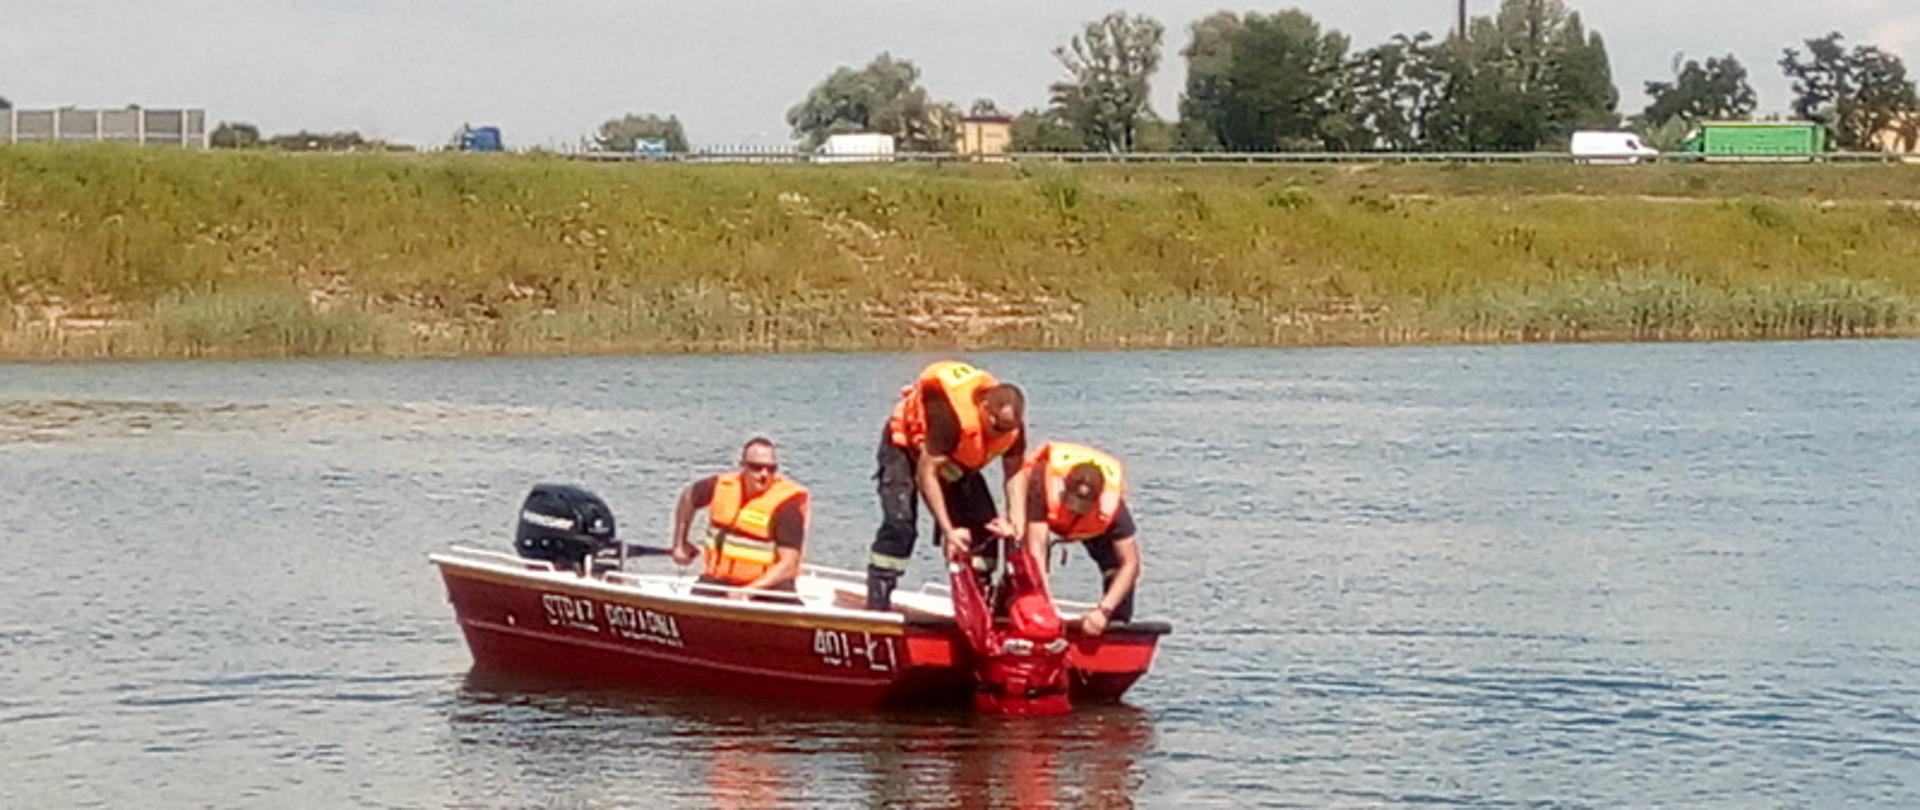 Zdjęcie główne przedstawia trzech strażaków z JRG Bochnia , którzy przy pomocy łodzi podpłynęli do tonącego człowieka i wydobywają go z wody na pokład. Strażacy mają założone kapoki natomiast strażak pozorujący tonącego ubrany jest w ubranie do pracy w wodzie.